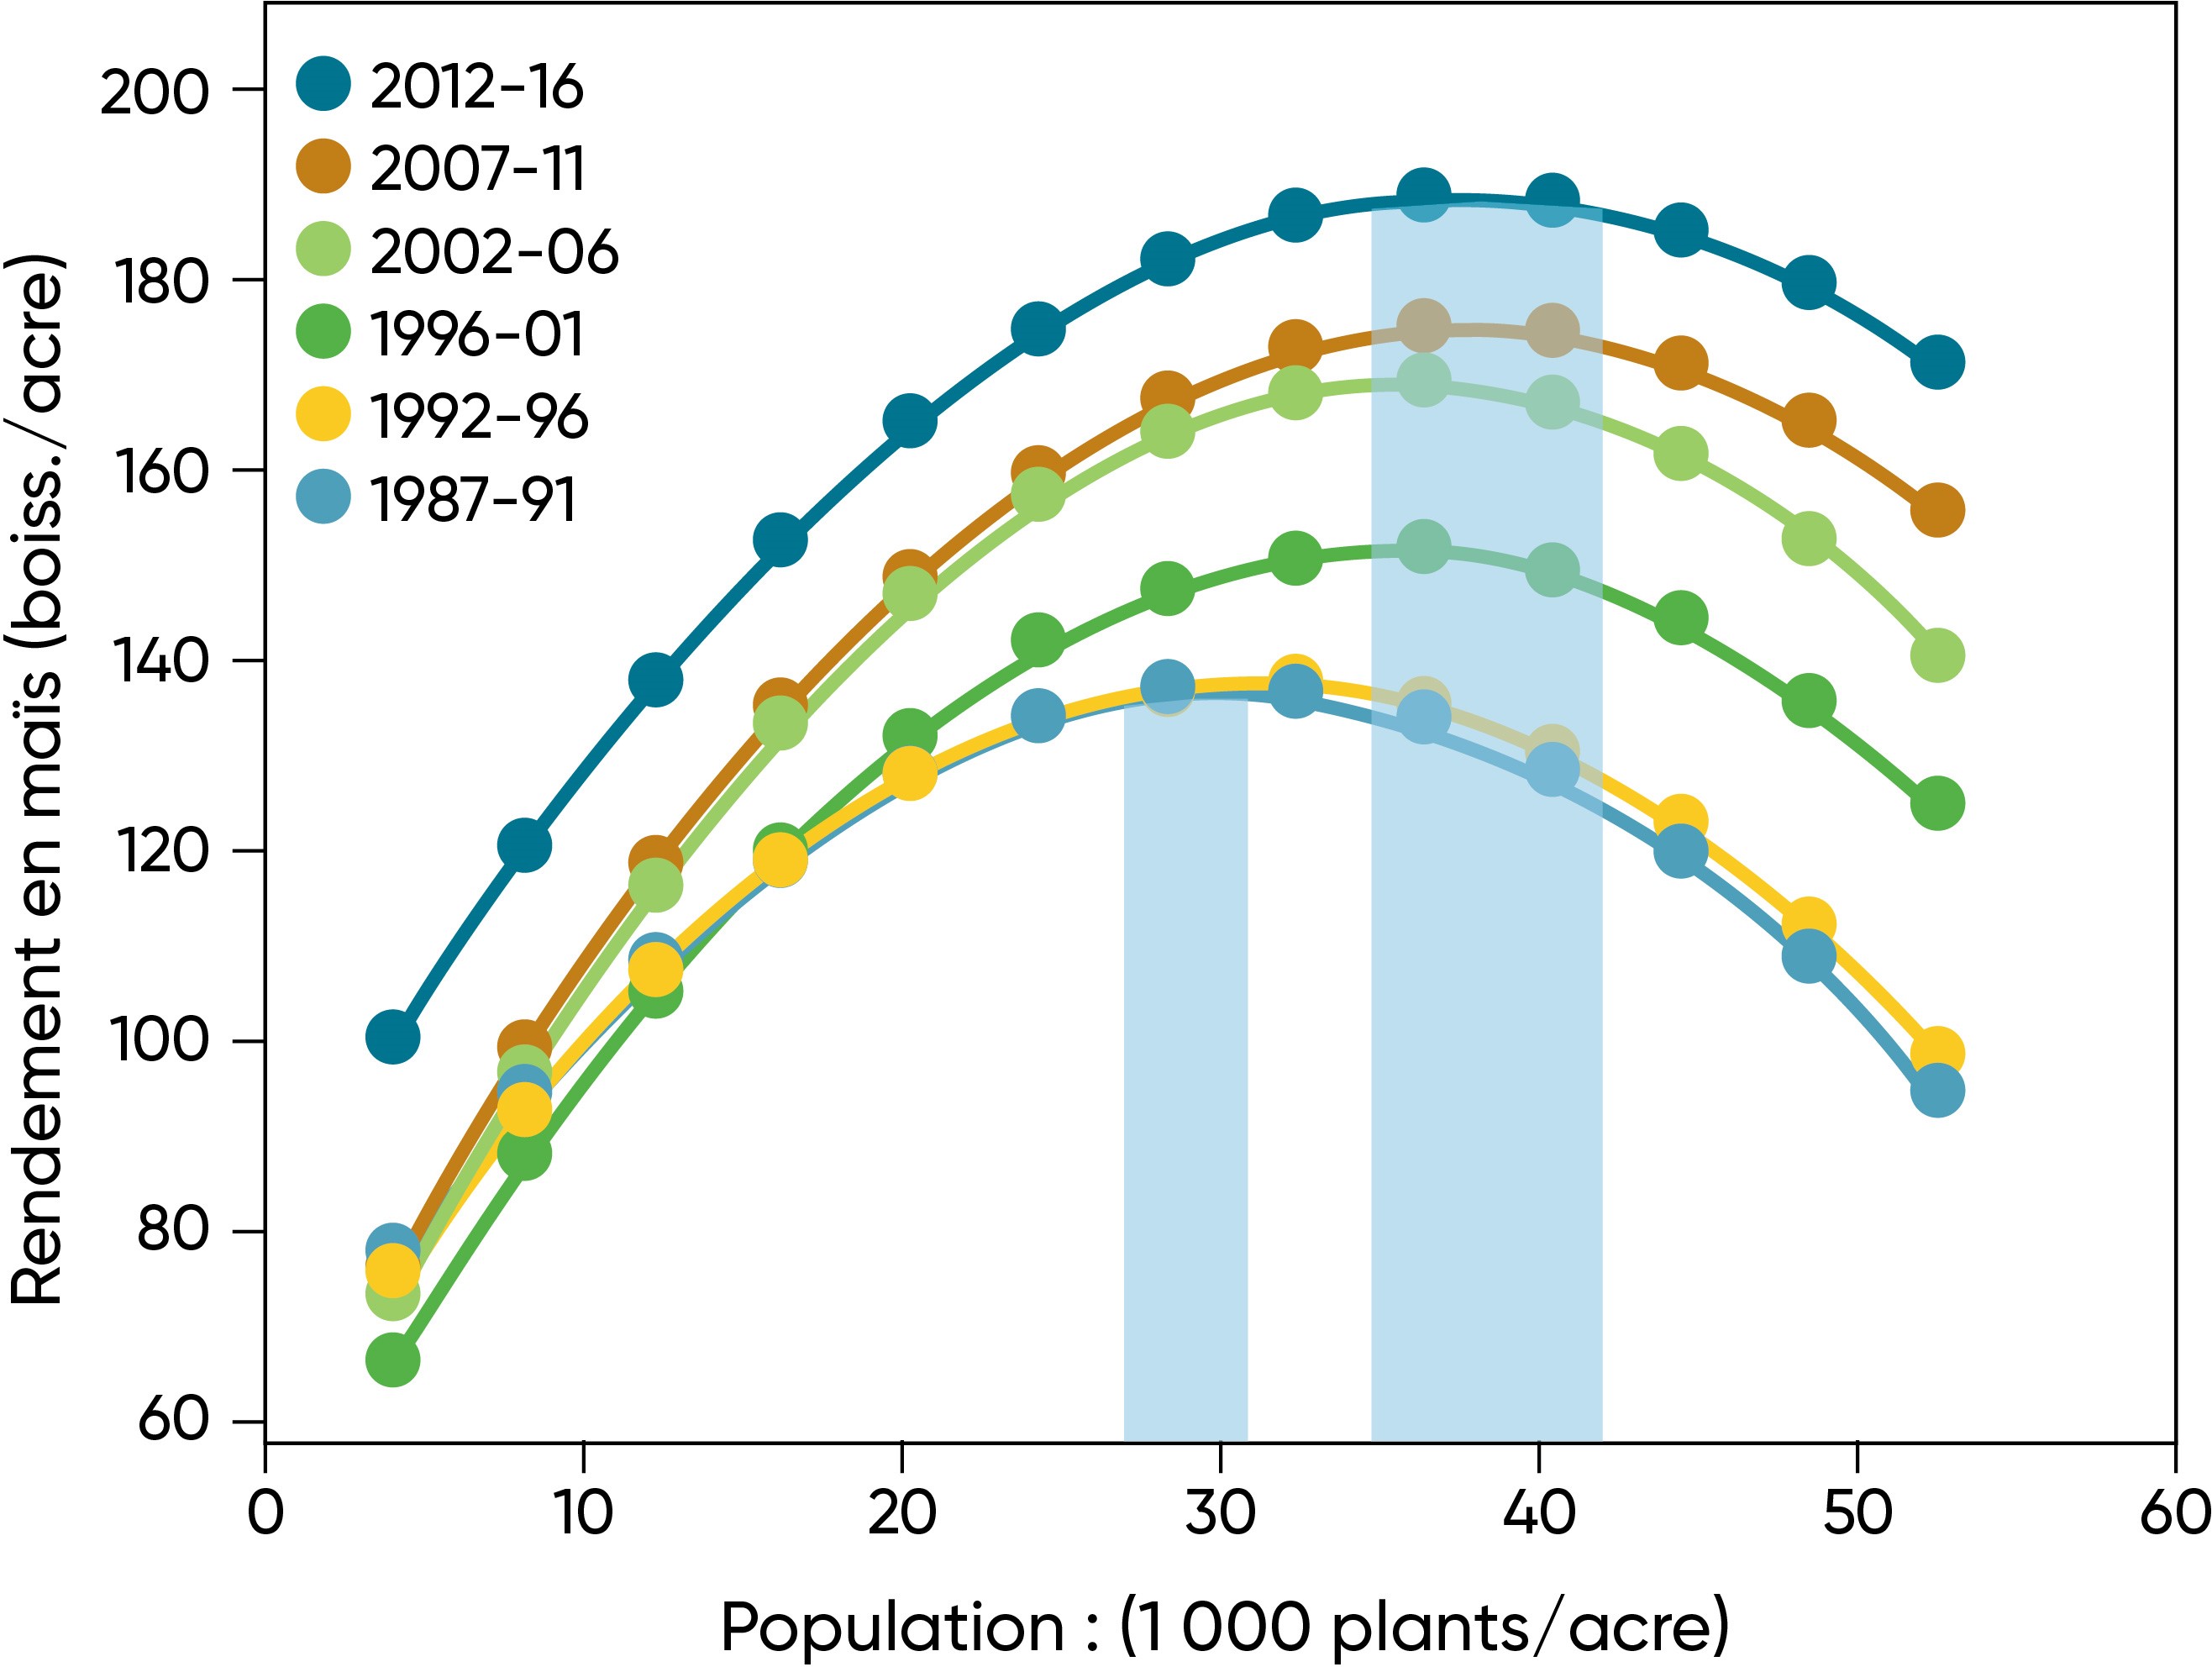 Densité agronomique optimale   (moyenne de tous les hybrides de marque Pioneer®) sur six périodes de cinq ans de 1987 à 2016. Les barres ombragées montrent l’augmentation de la gamme de population optimale agronomique depuis la période la plus ancienne de l’étude jusqu’à la plus récente.